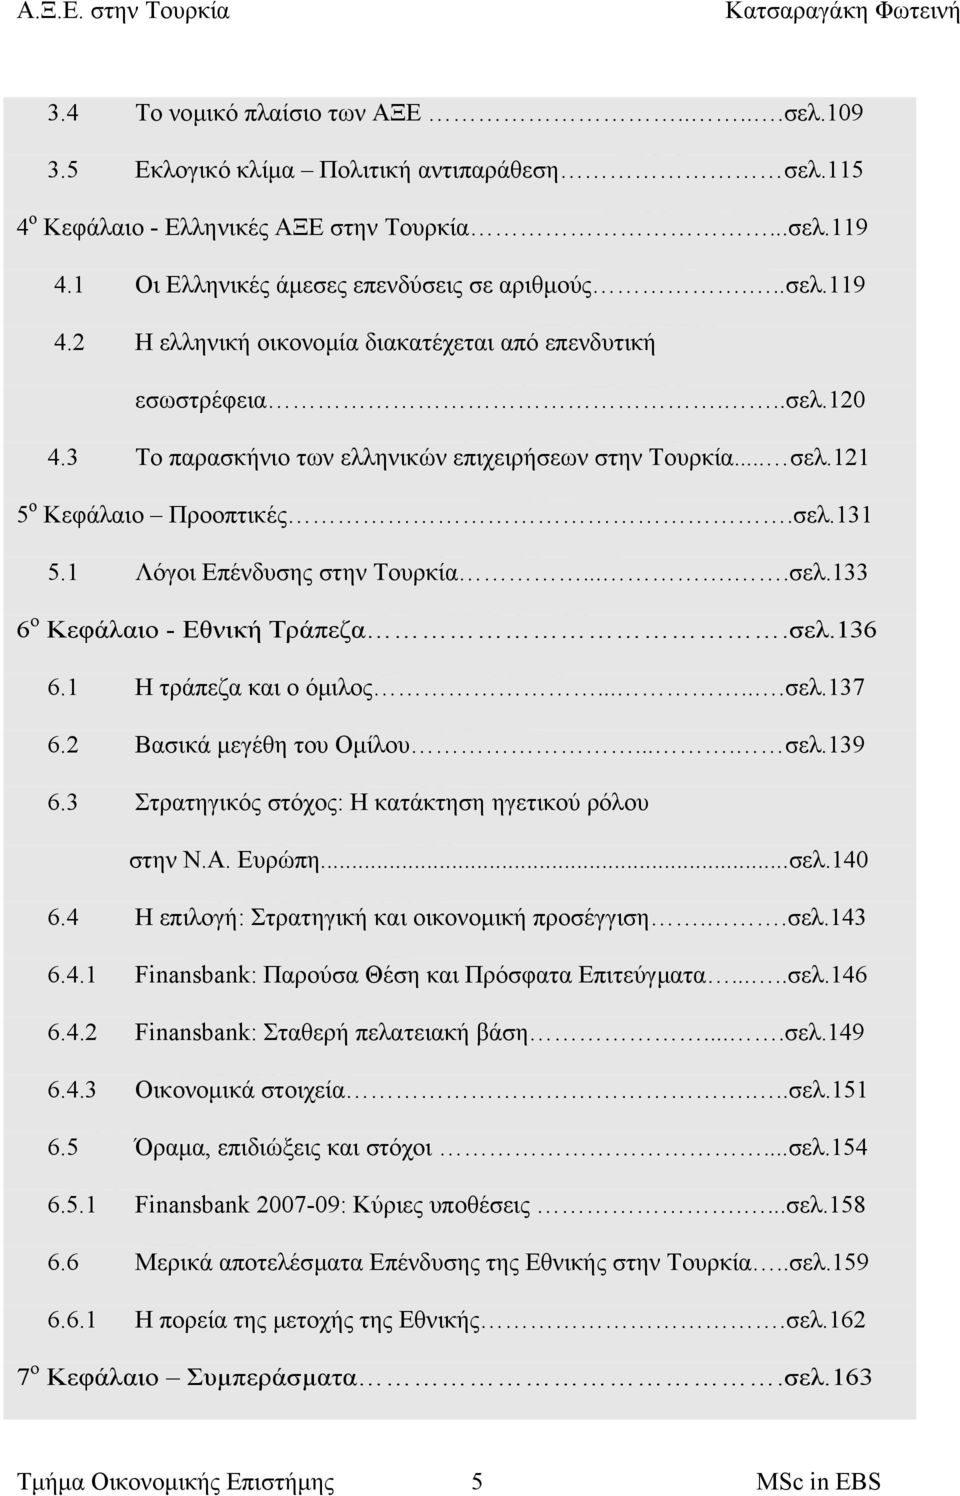 121 5 ο Κεφάλαιο Προοπτικές.σελ.131 5.1 Λόγοι Επένδυσης στην Τουρκία.....σελ.133 6 ο Κεφάλαιο - Εθνική Τράπεζα.σελ.136 6.1 Η τράπεζα και ο όµιλος......σελ.137 6.2 Βασικά µεγέθη του Οµίλου.... σελ.